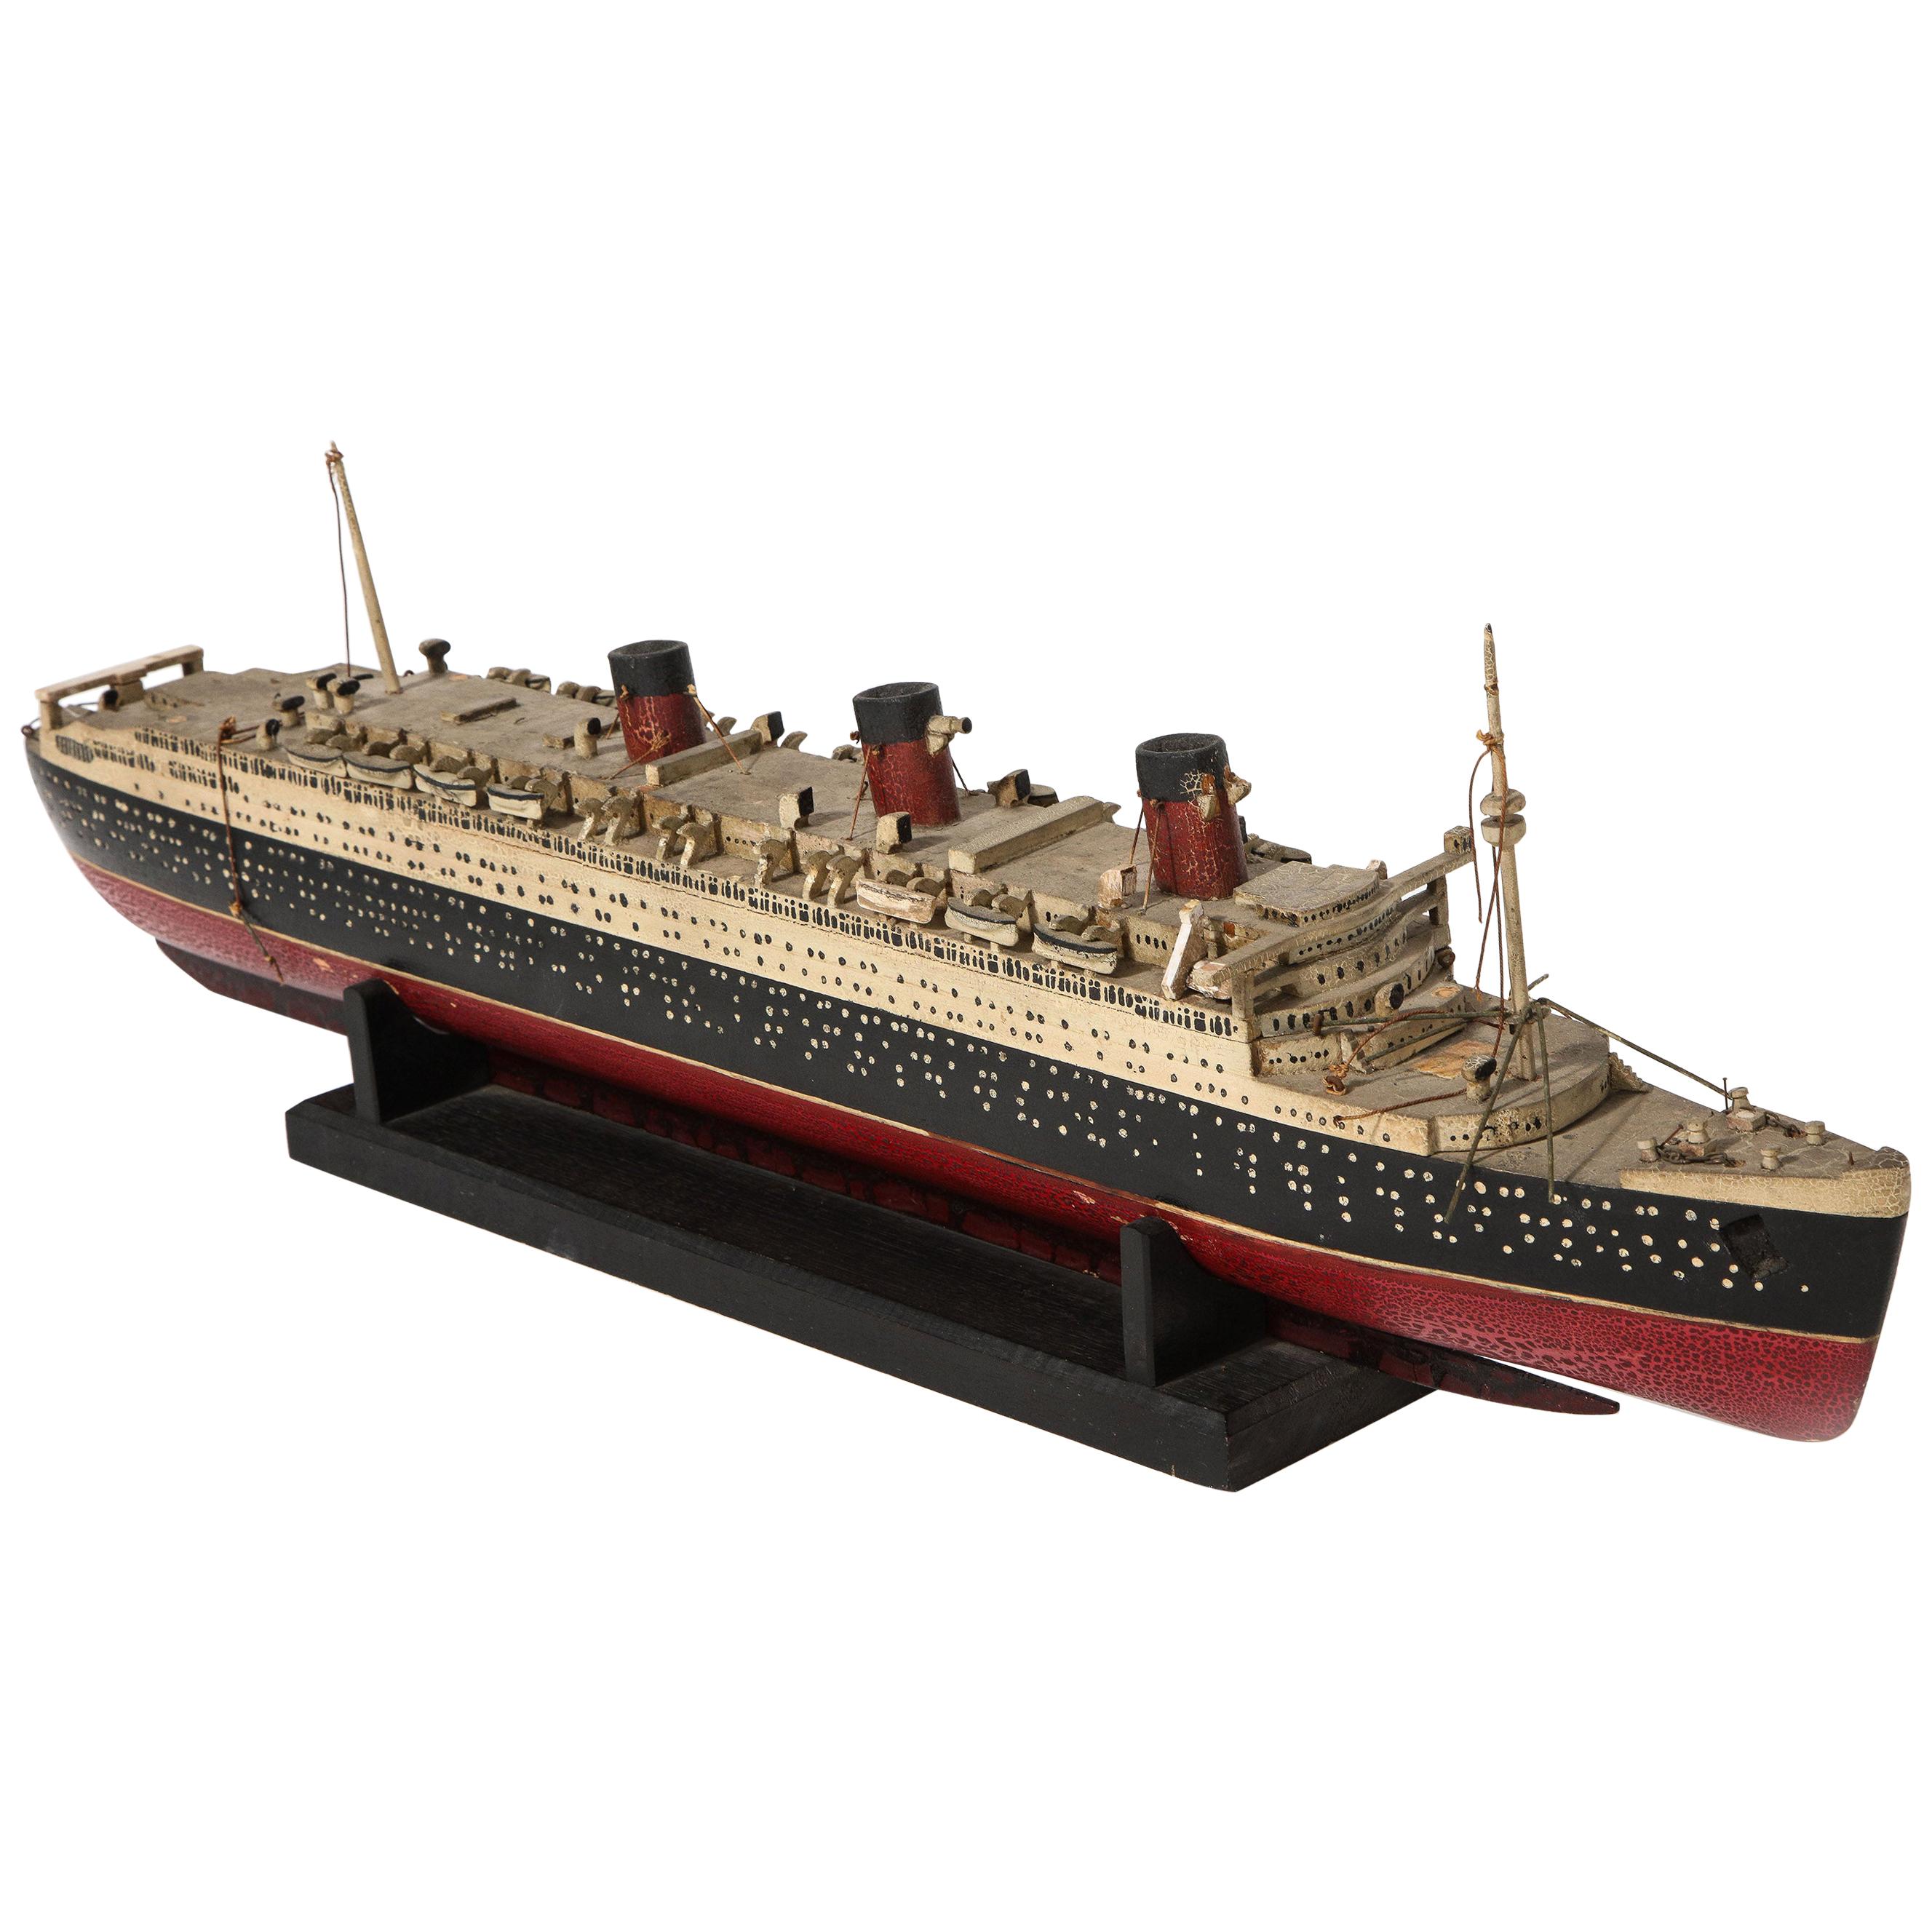 Modèle de la Queen Mary des RMS fabriqué à la main